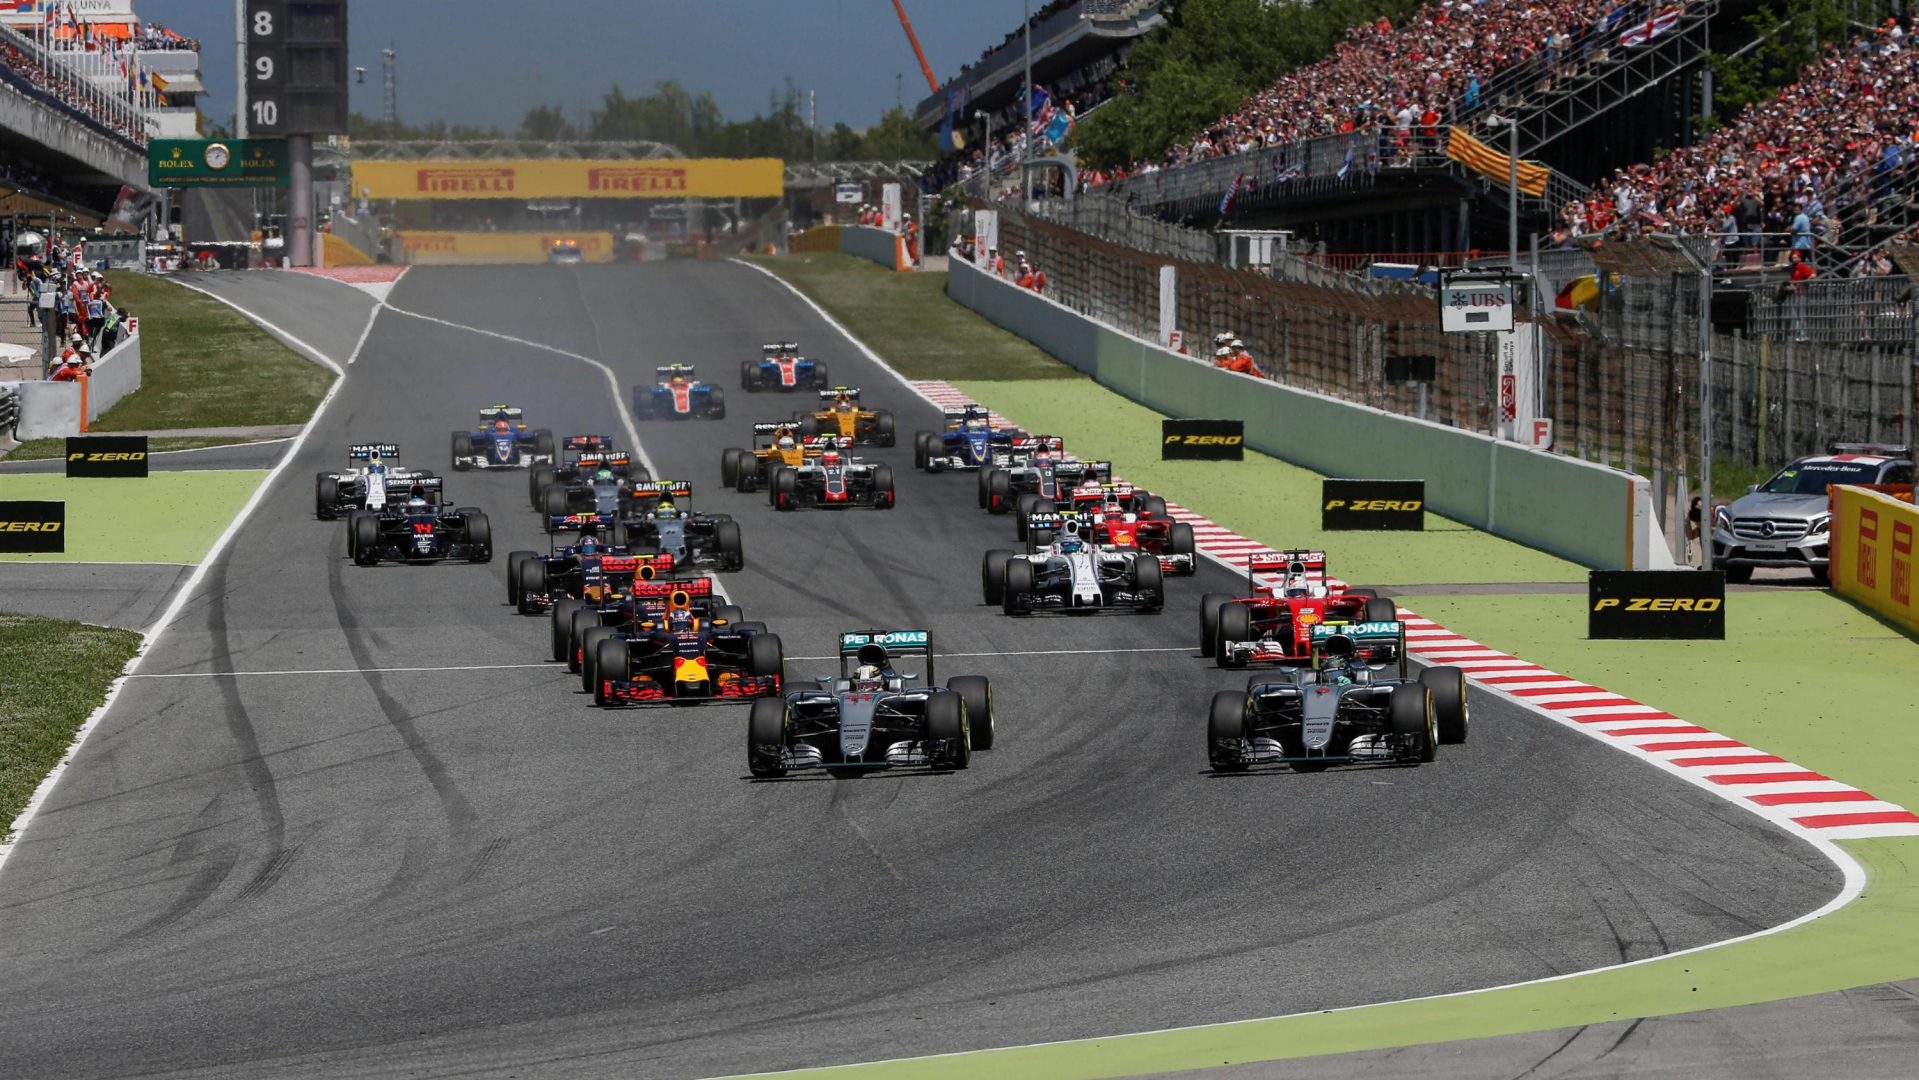 Se viene el Gran Premio de España 2017 en Montmeló, Barcelona